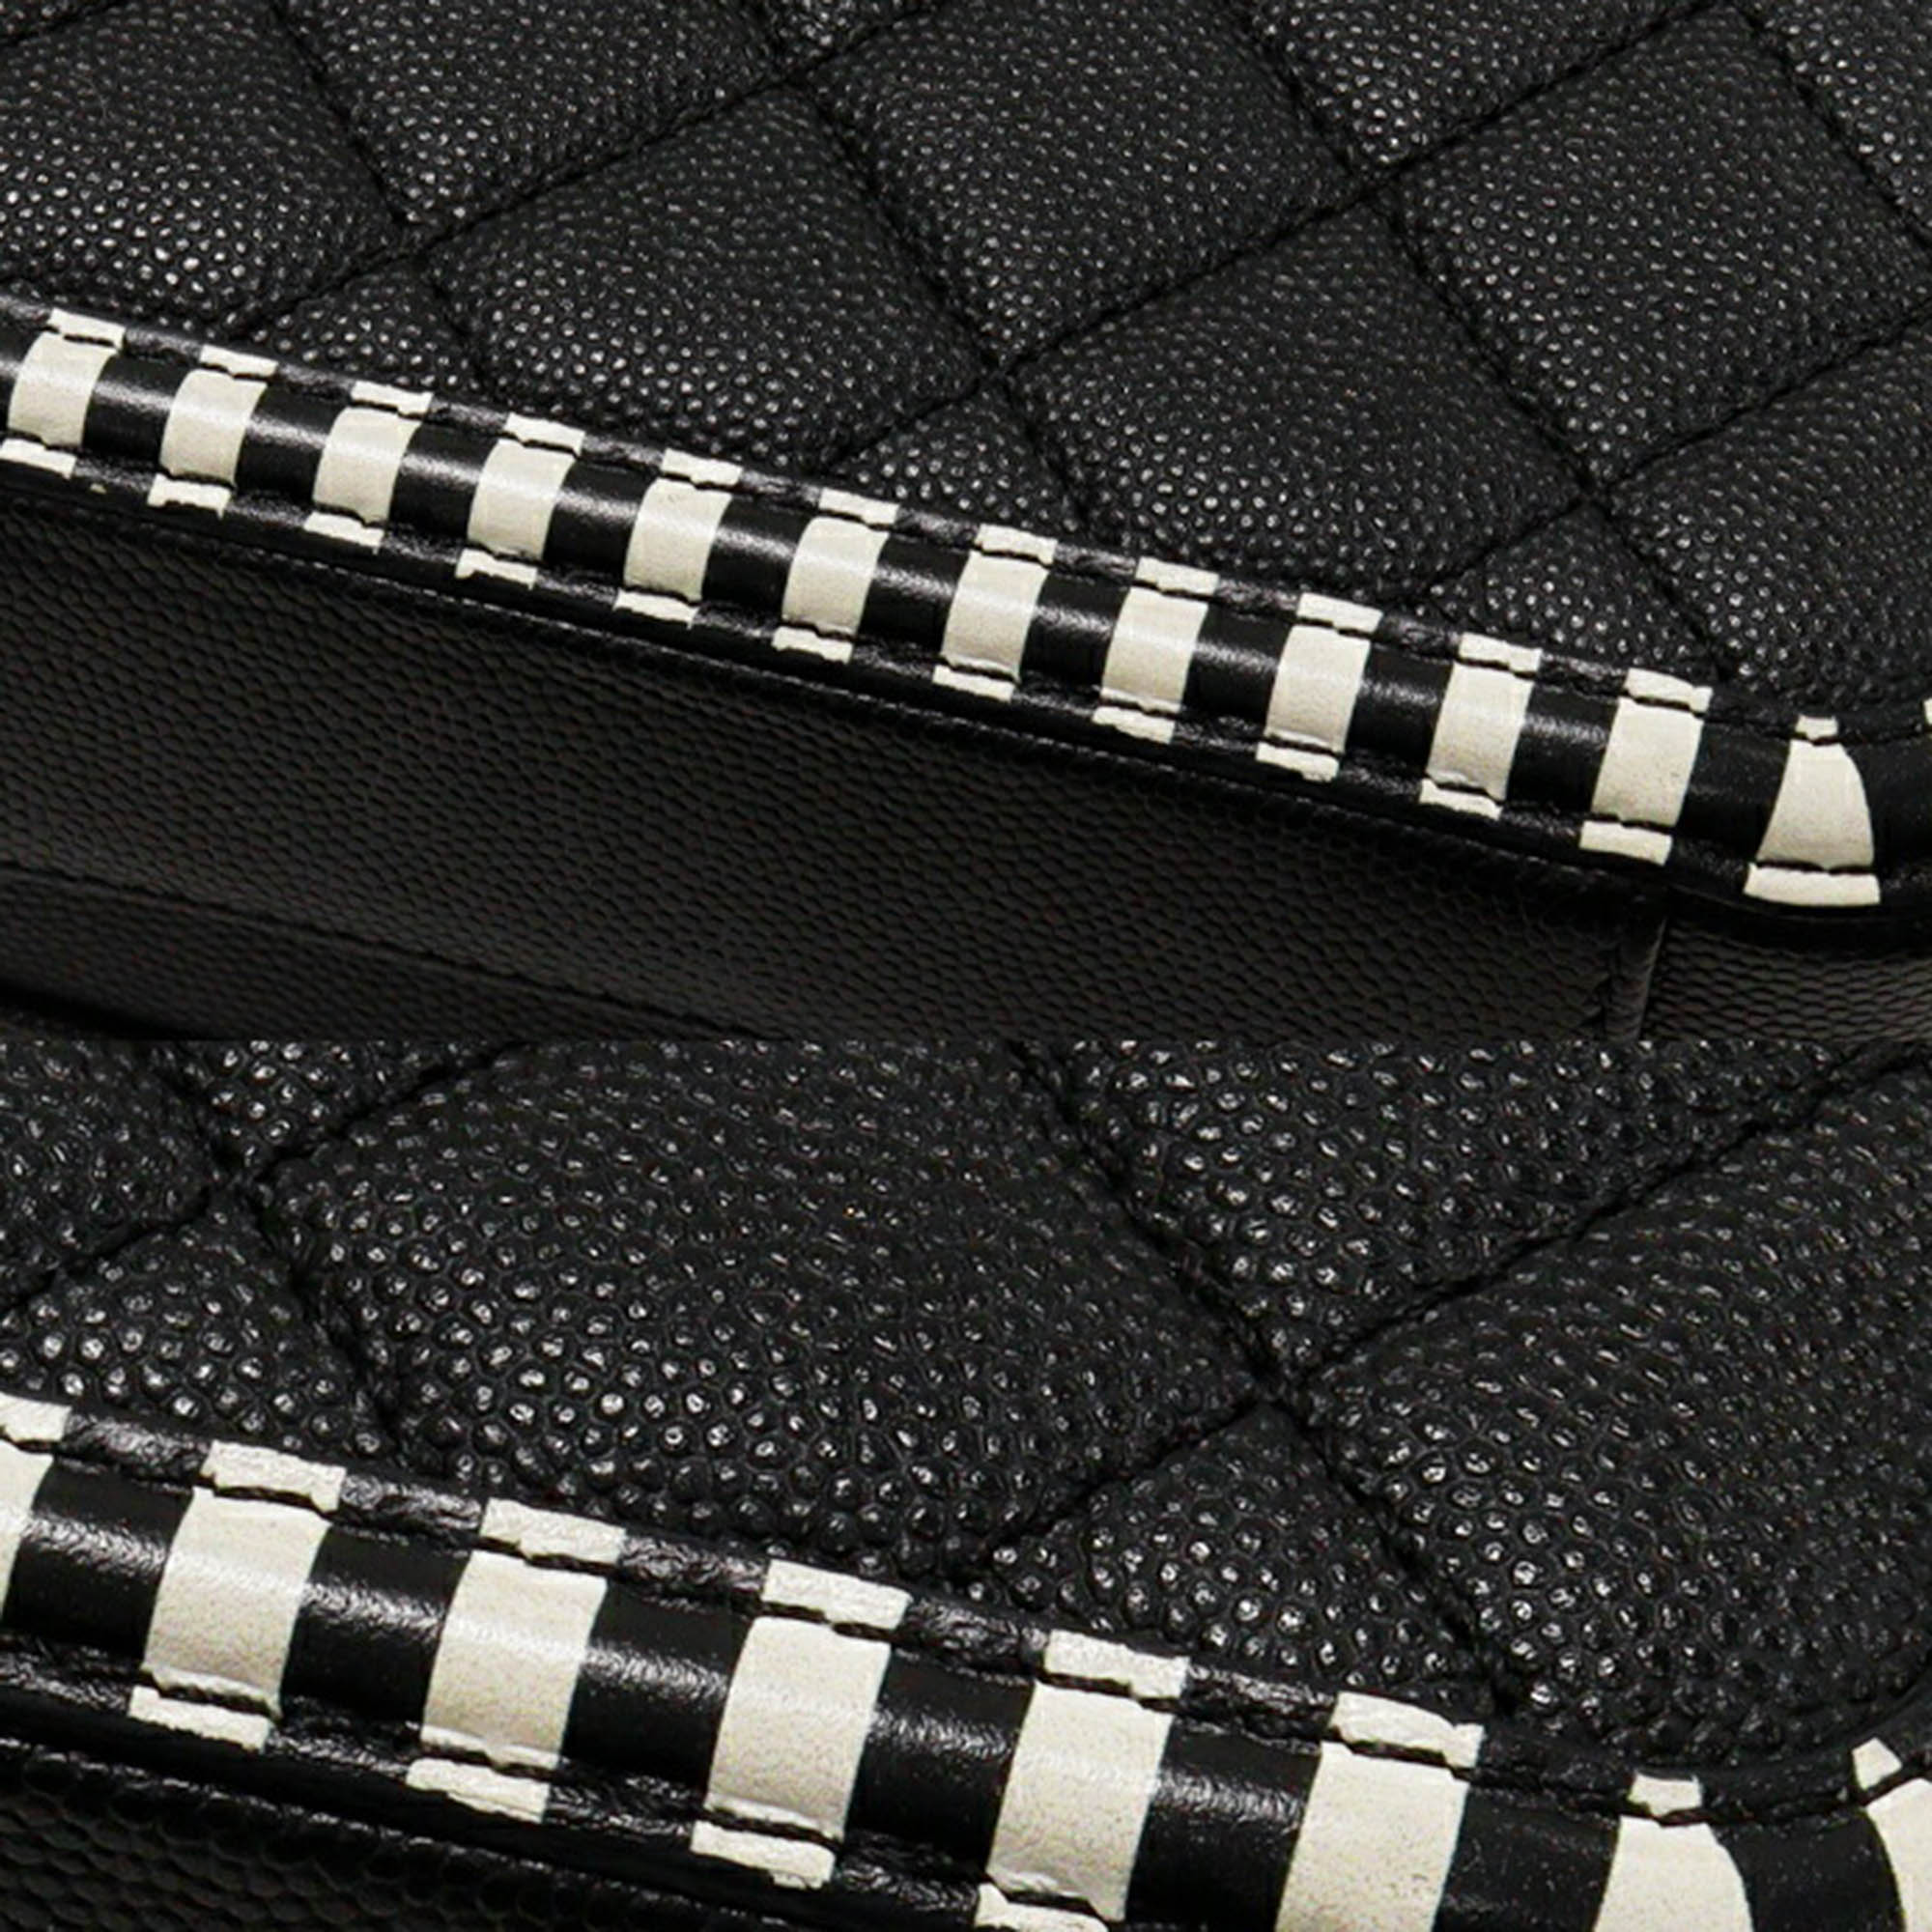 Chanel Black Caviar Leather CC Vanity Case Filigree Shoulder Bag